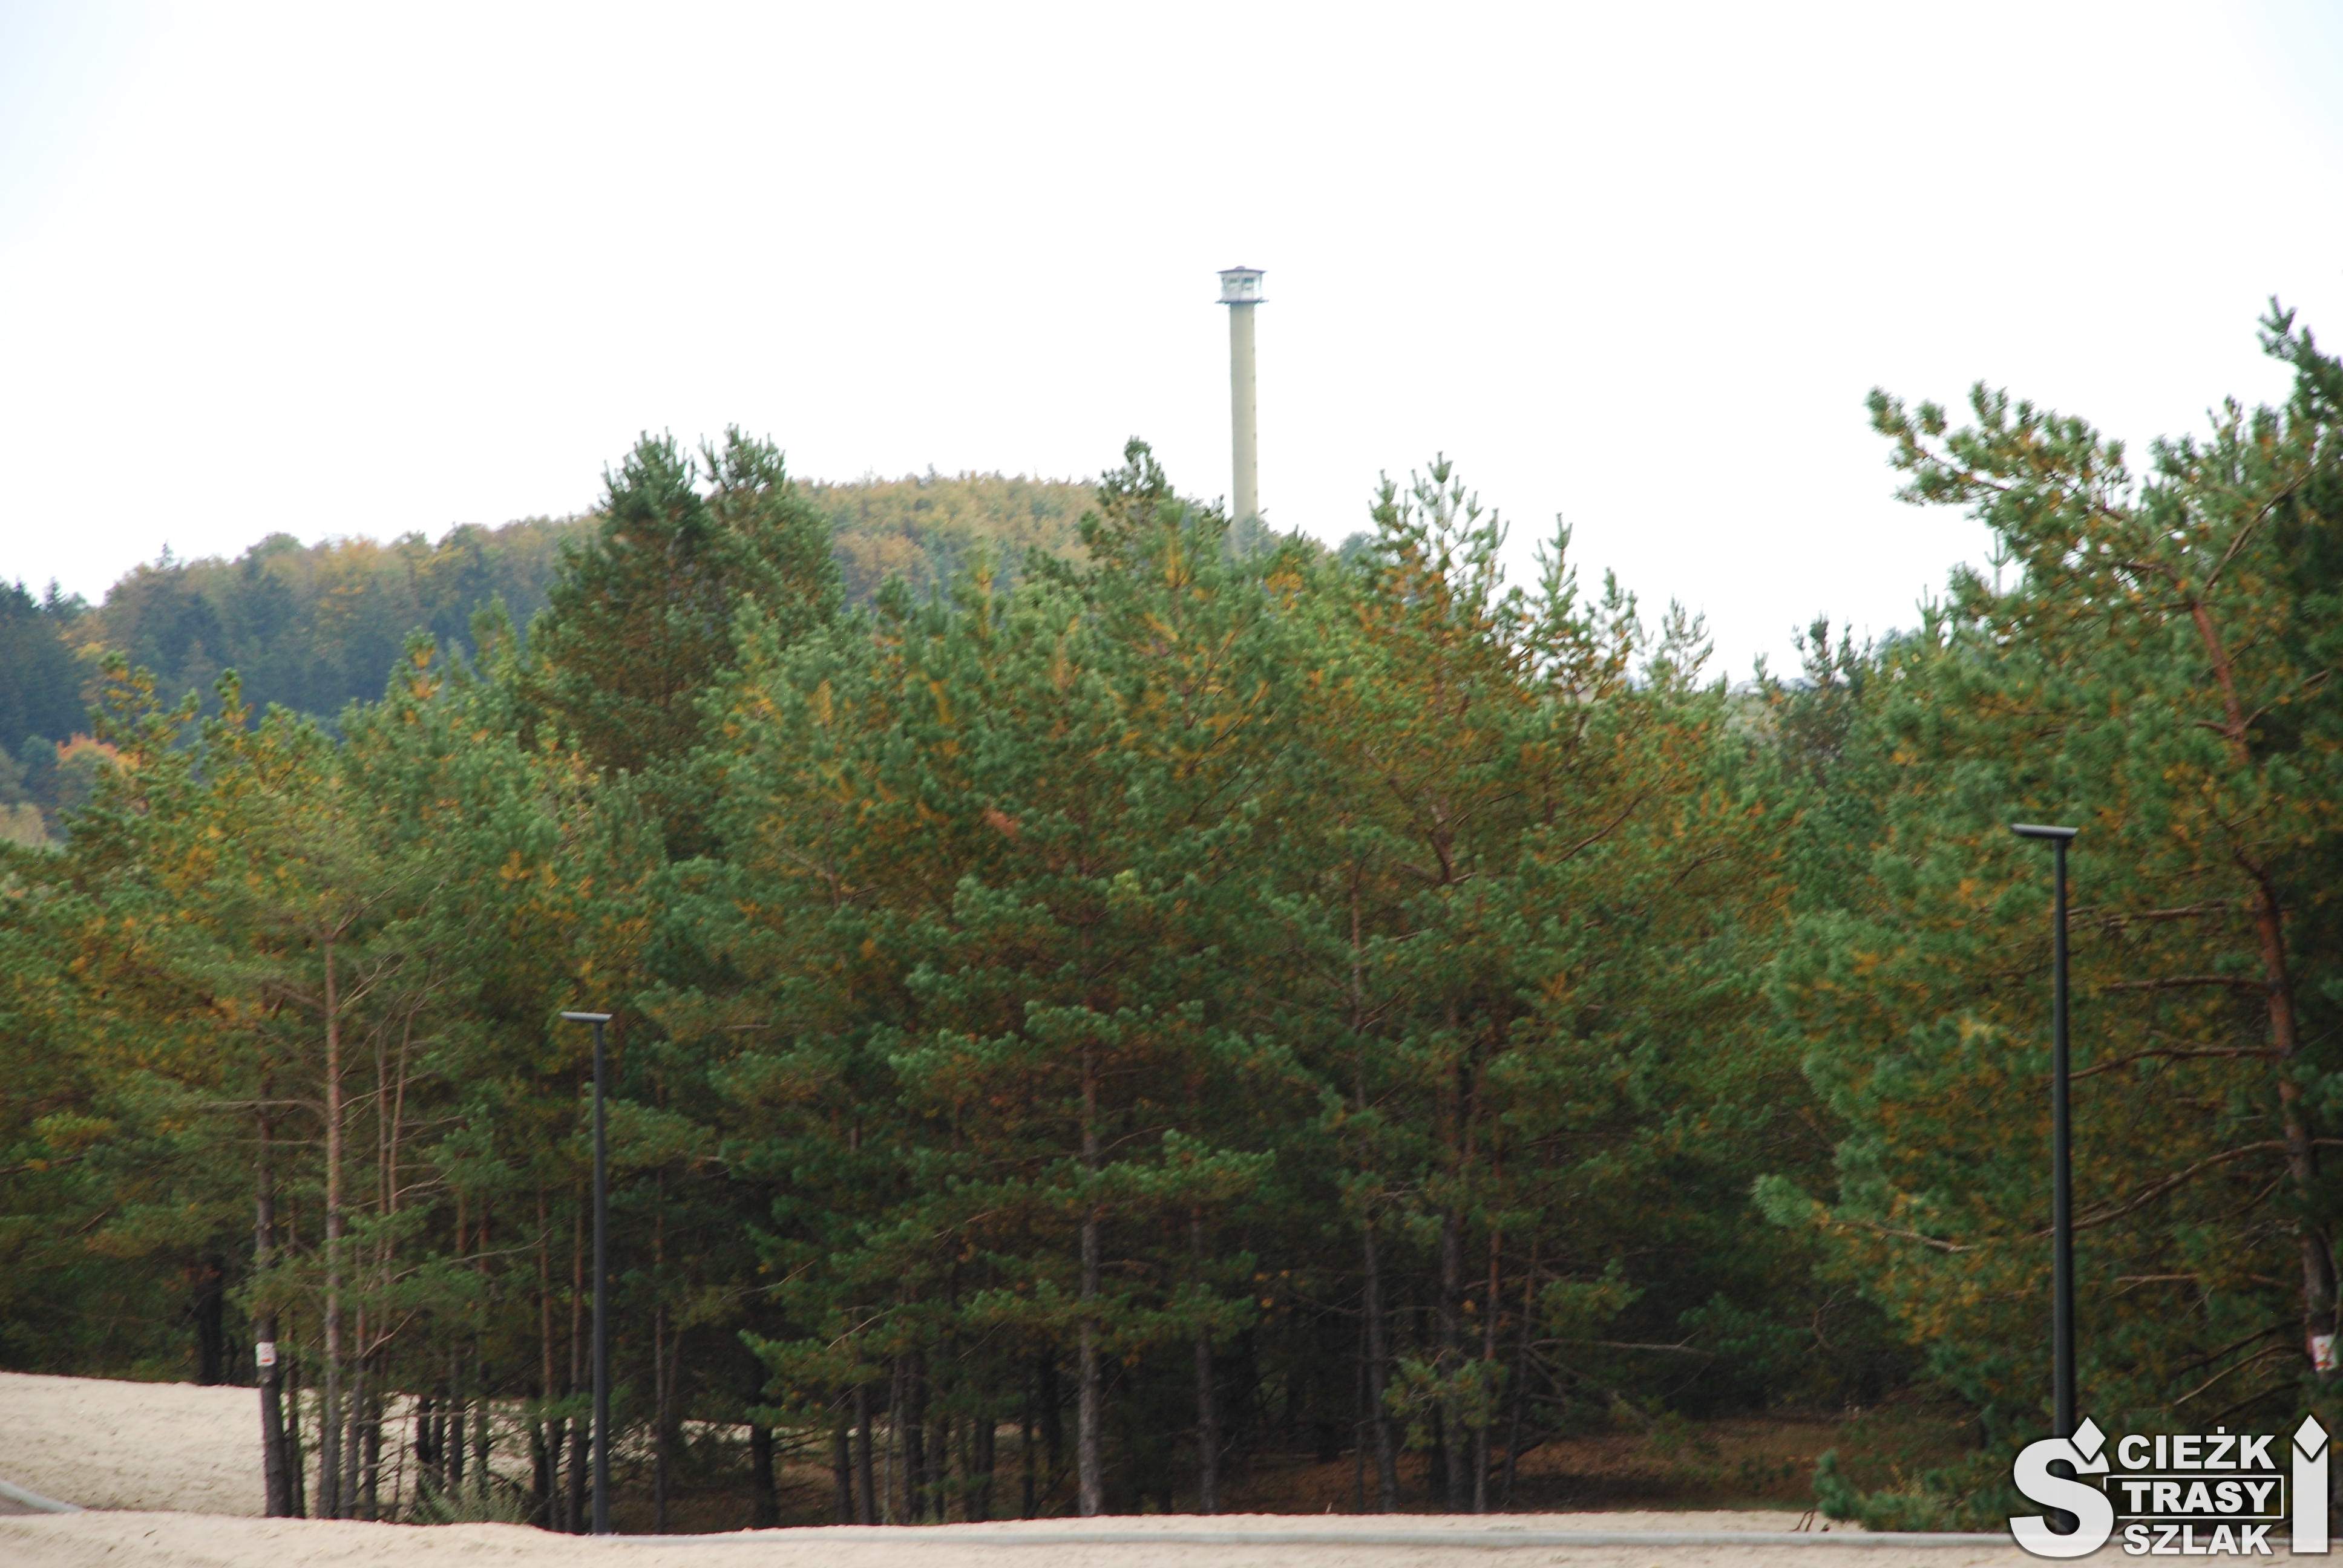 Wysoka wieża przeciwpożarowa ponad koronami drzew na wzgórzu Czubatka